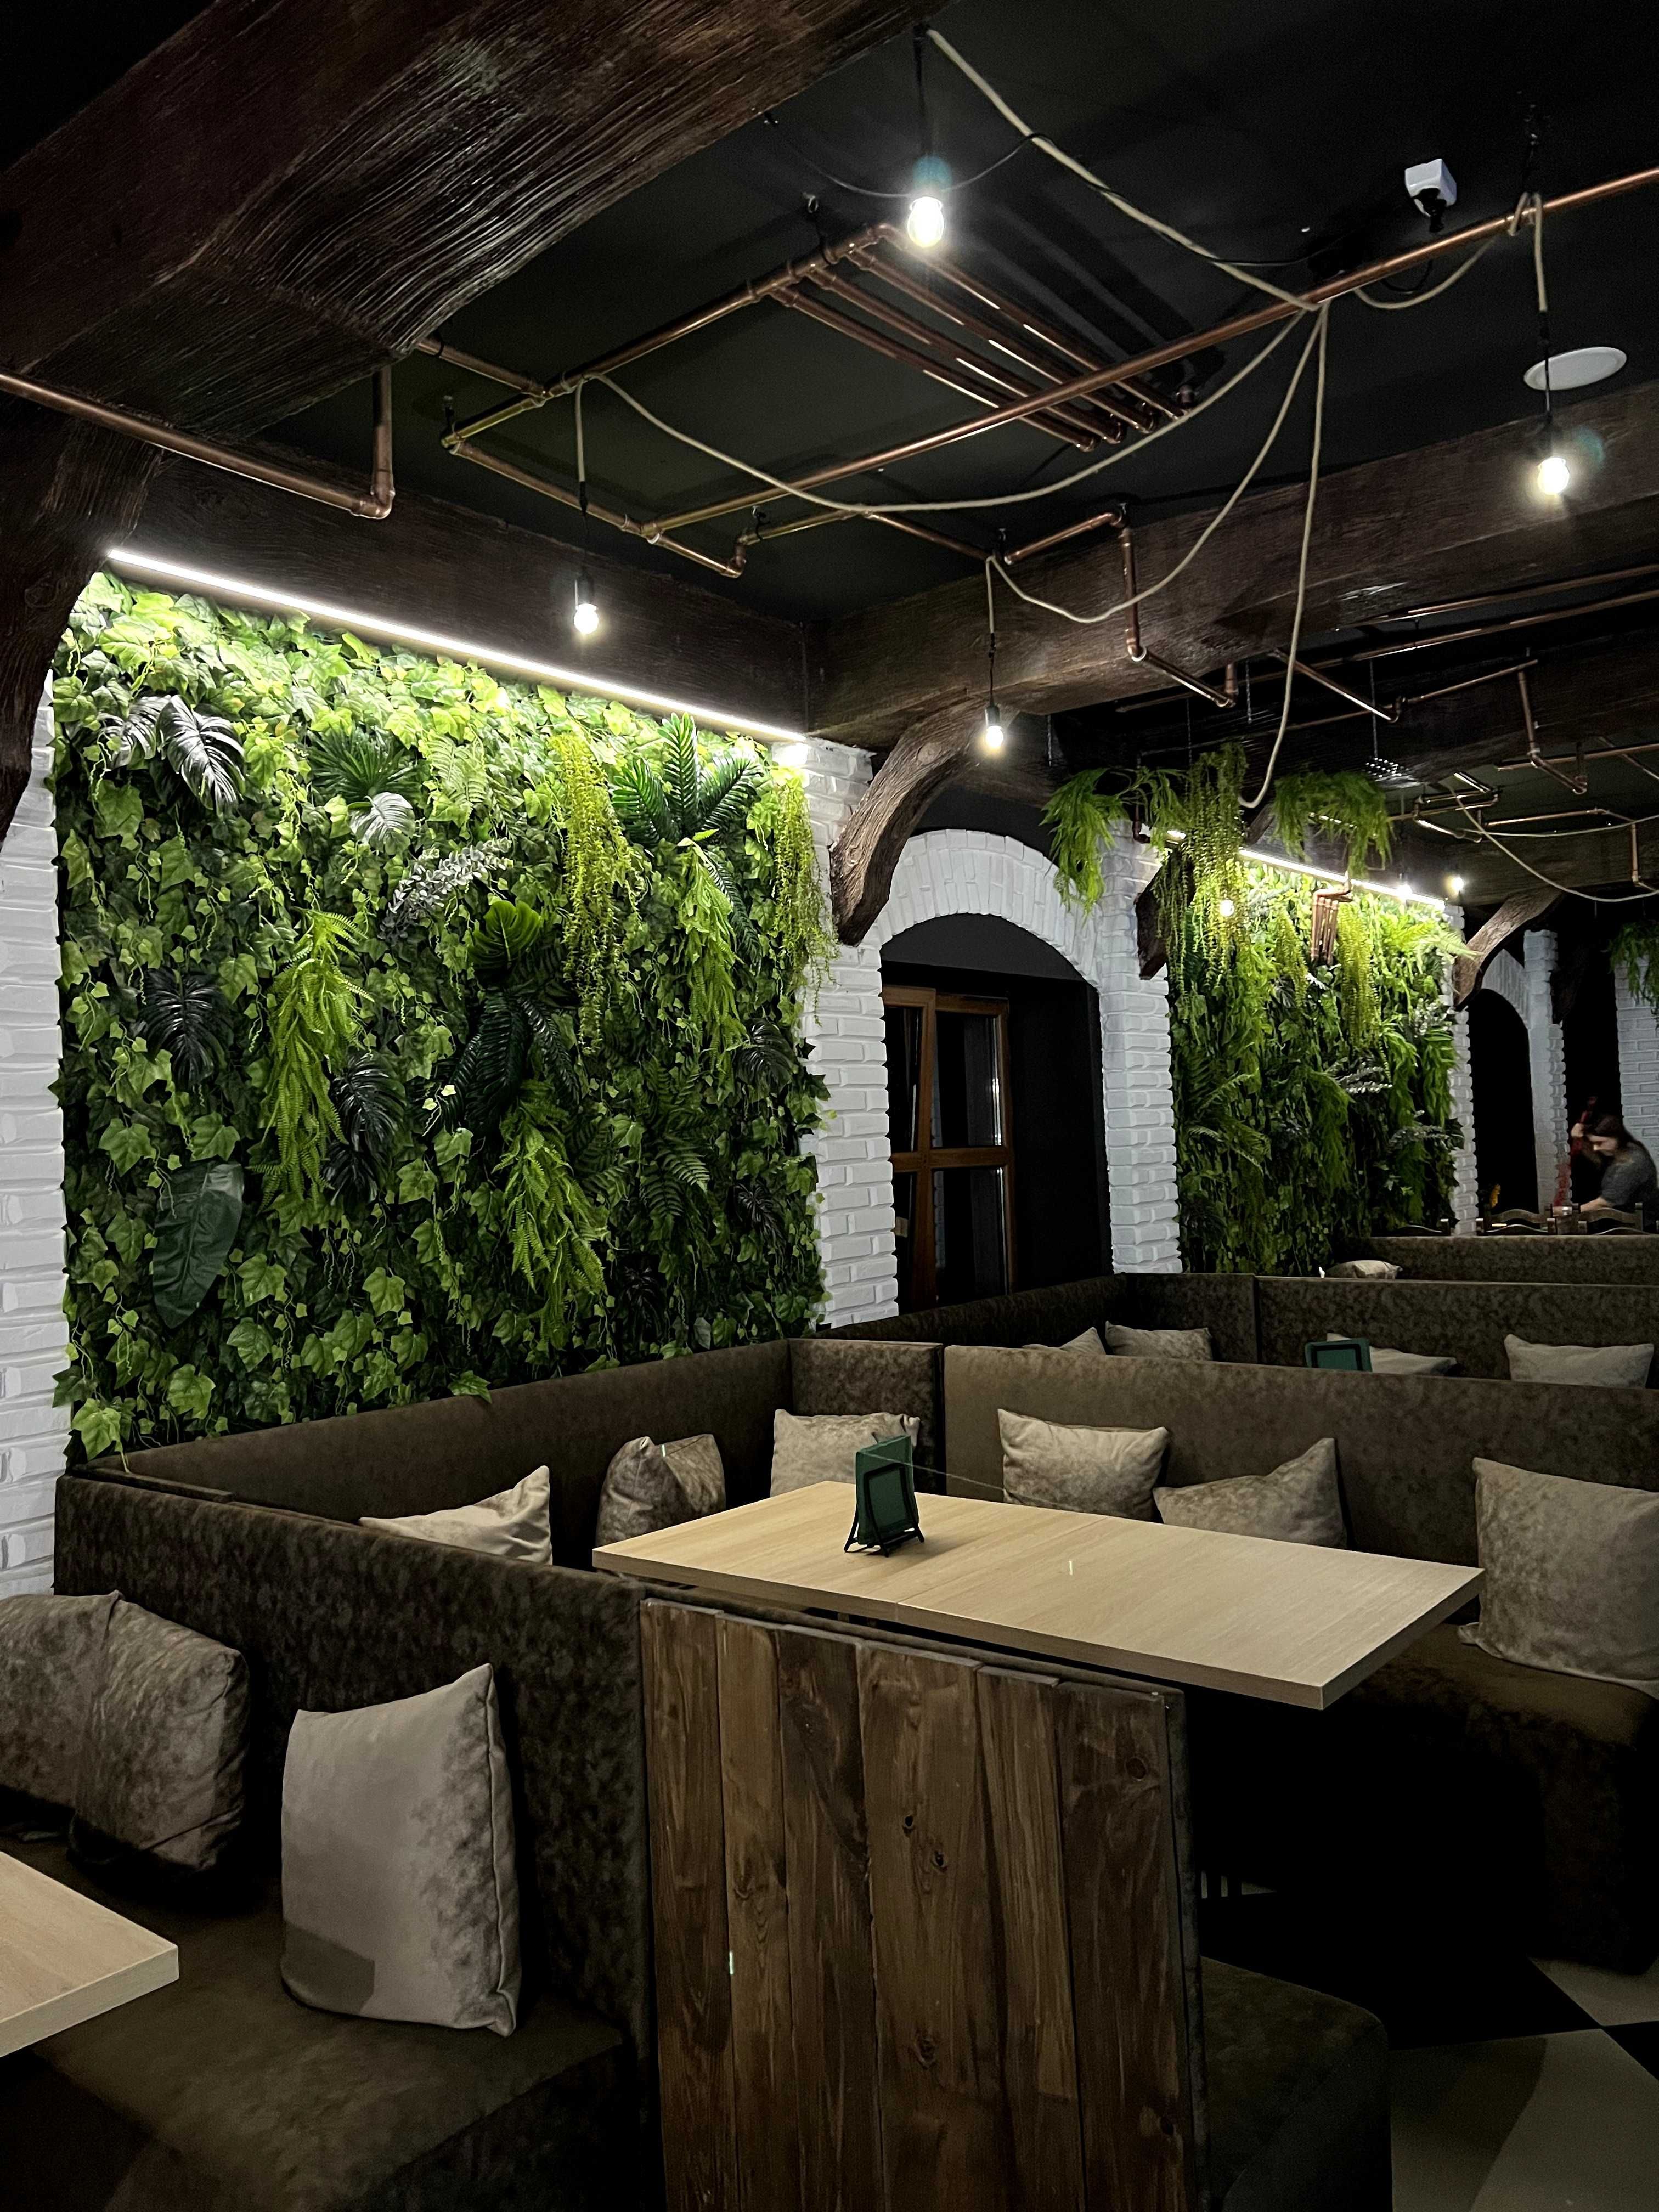 Ogród wertykalny sztuczna zielona ściana z roślin mchu PRODUCENT